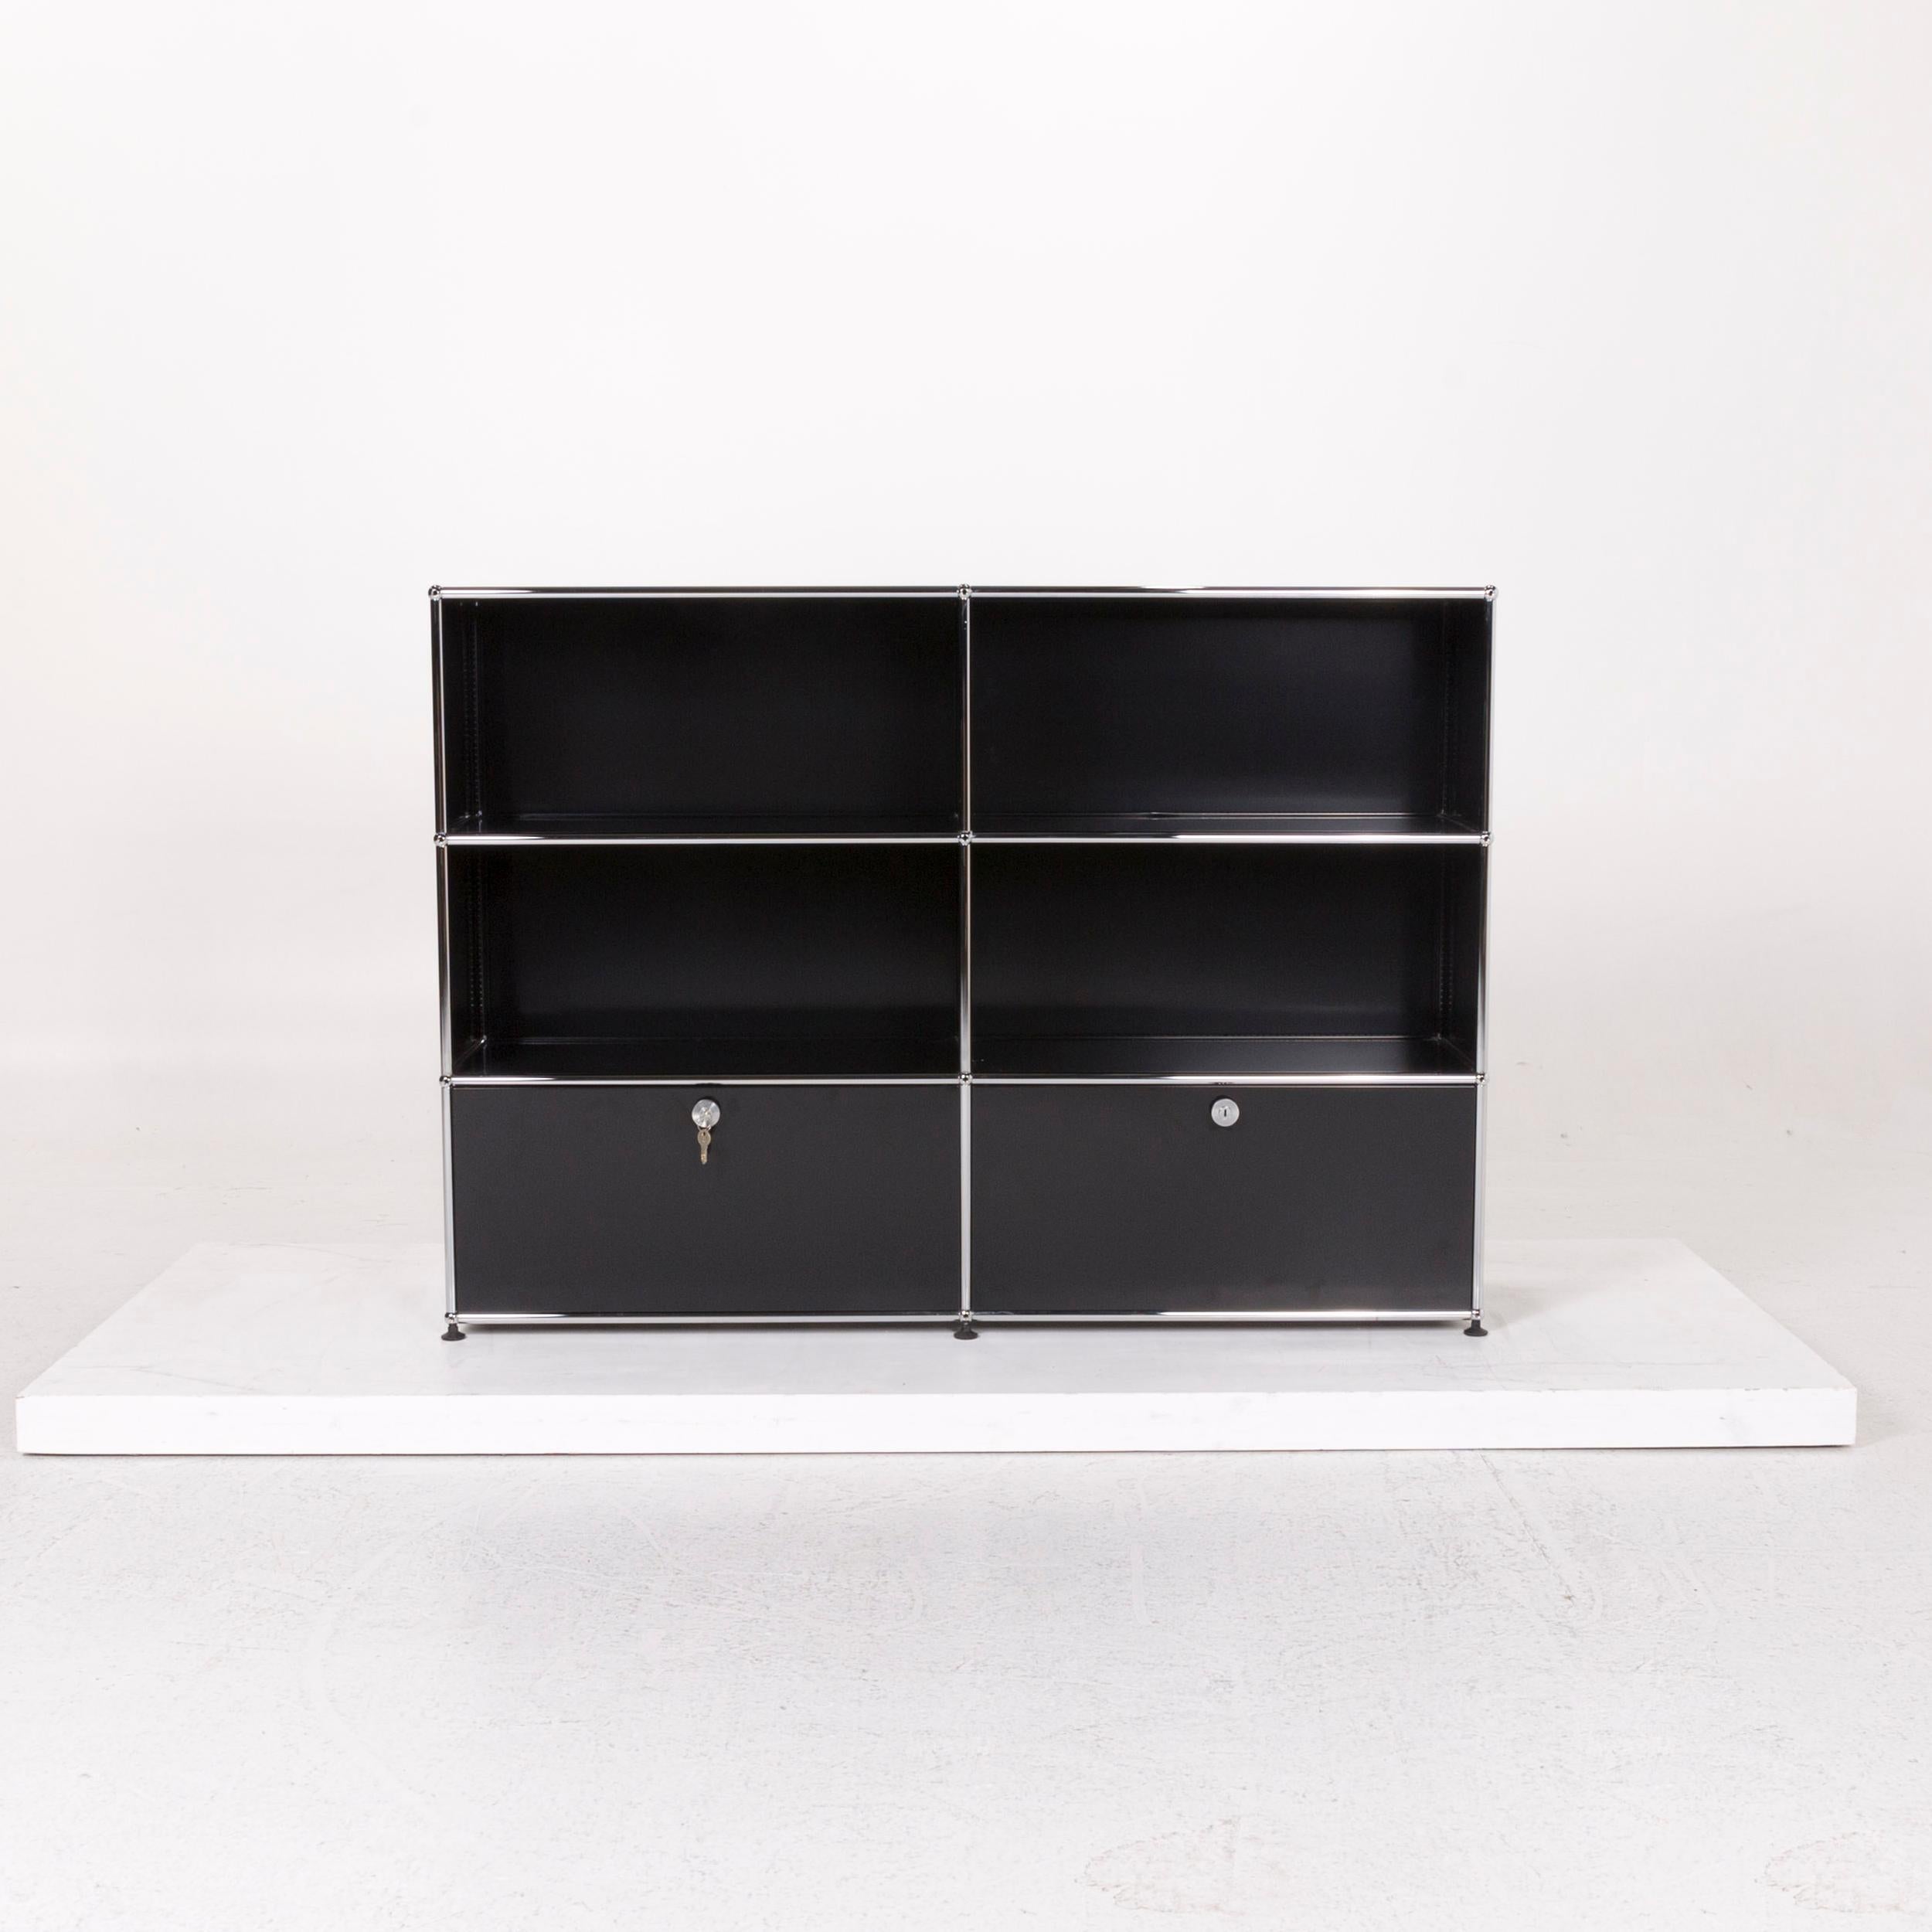 Contemporary USM Haller Metal Sideboard Black Shelf Office